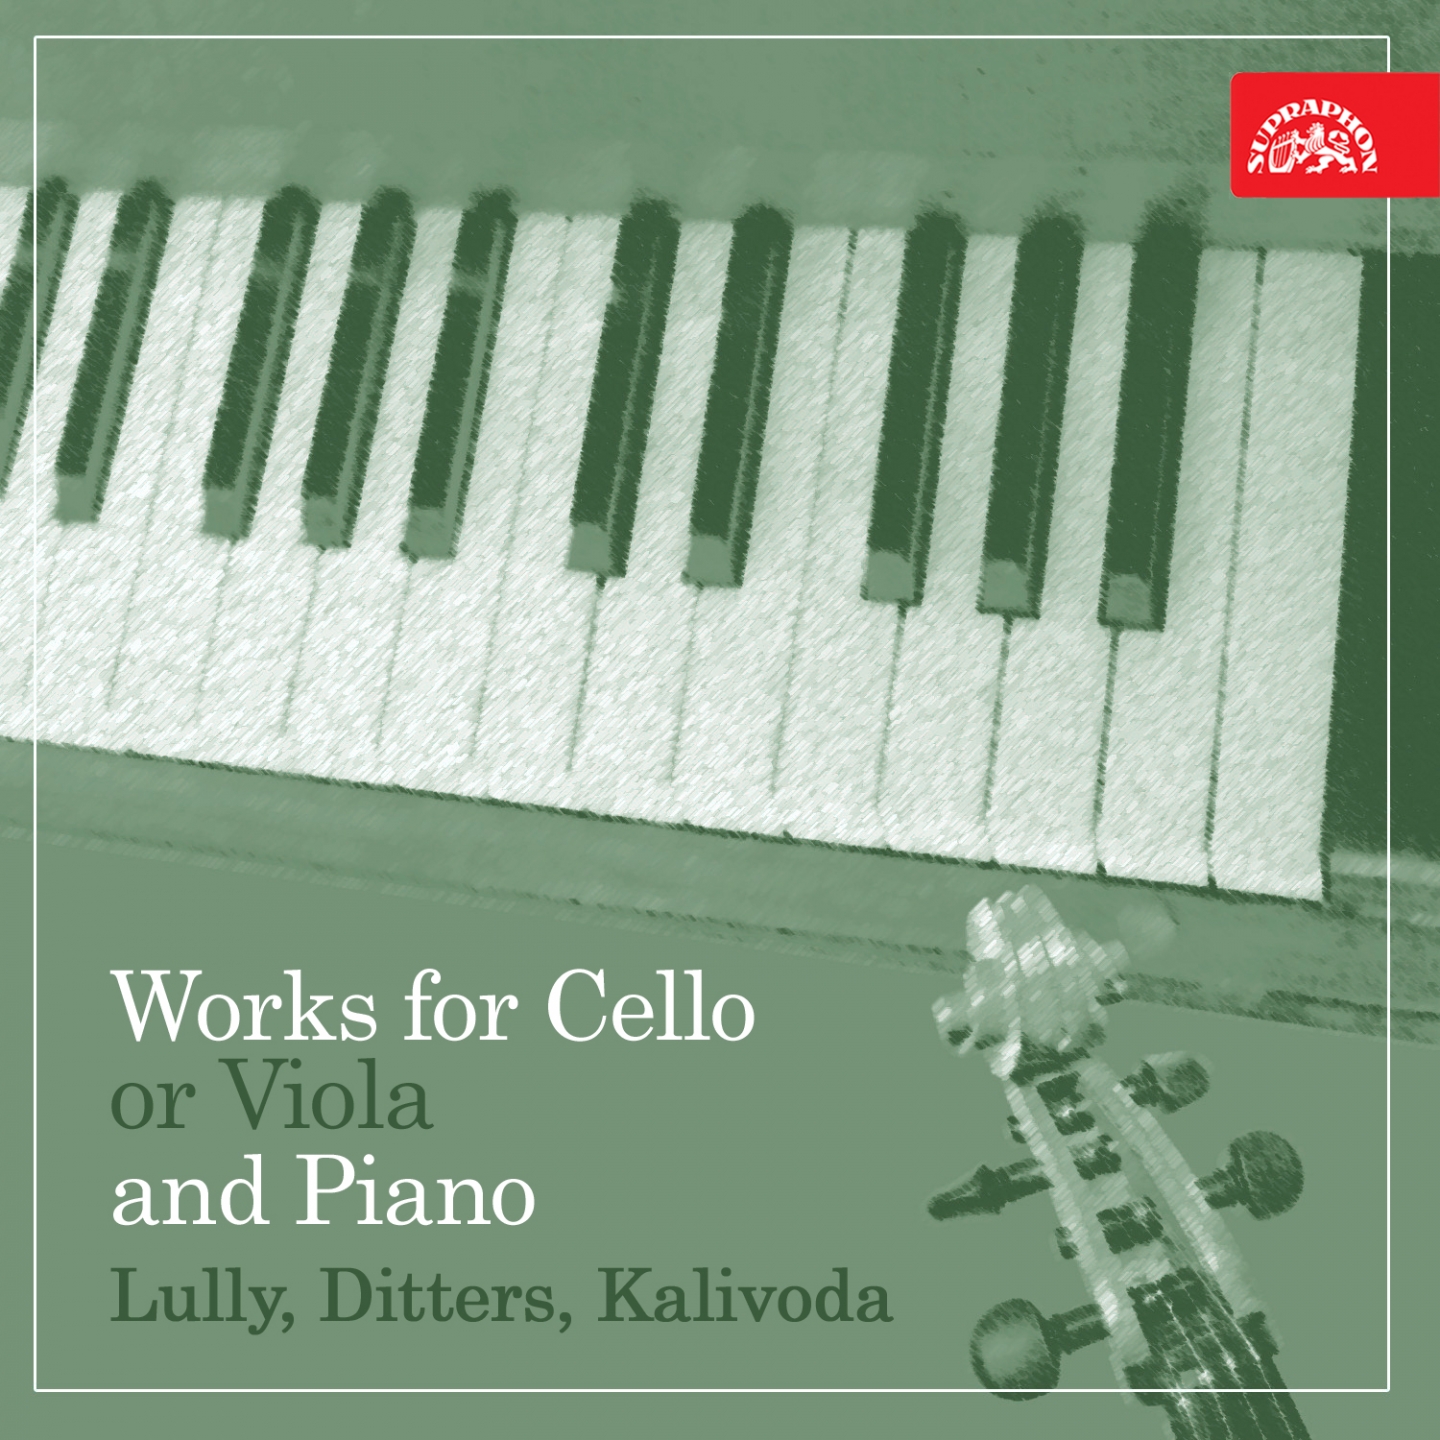 Gavotte for Cello and Piano, .